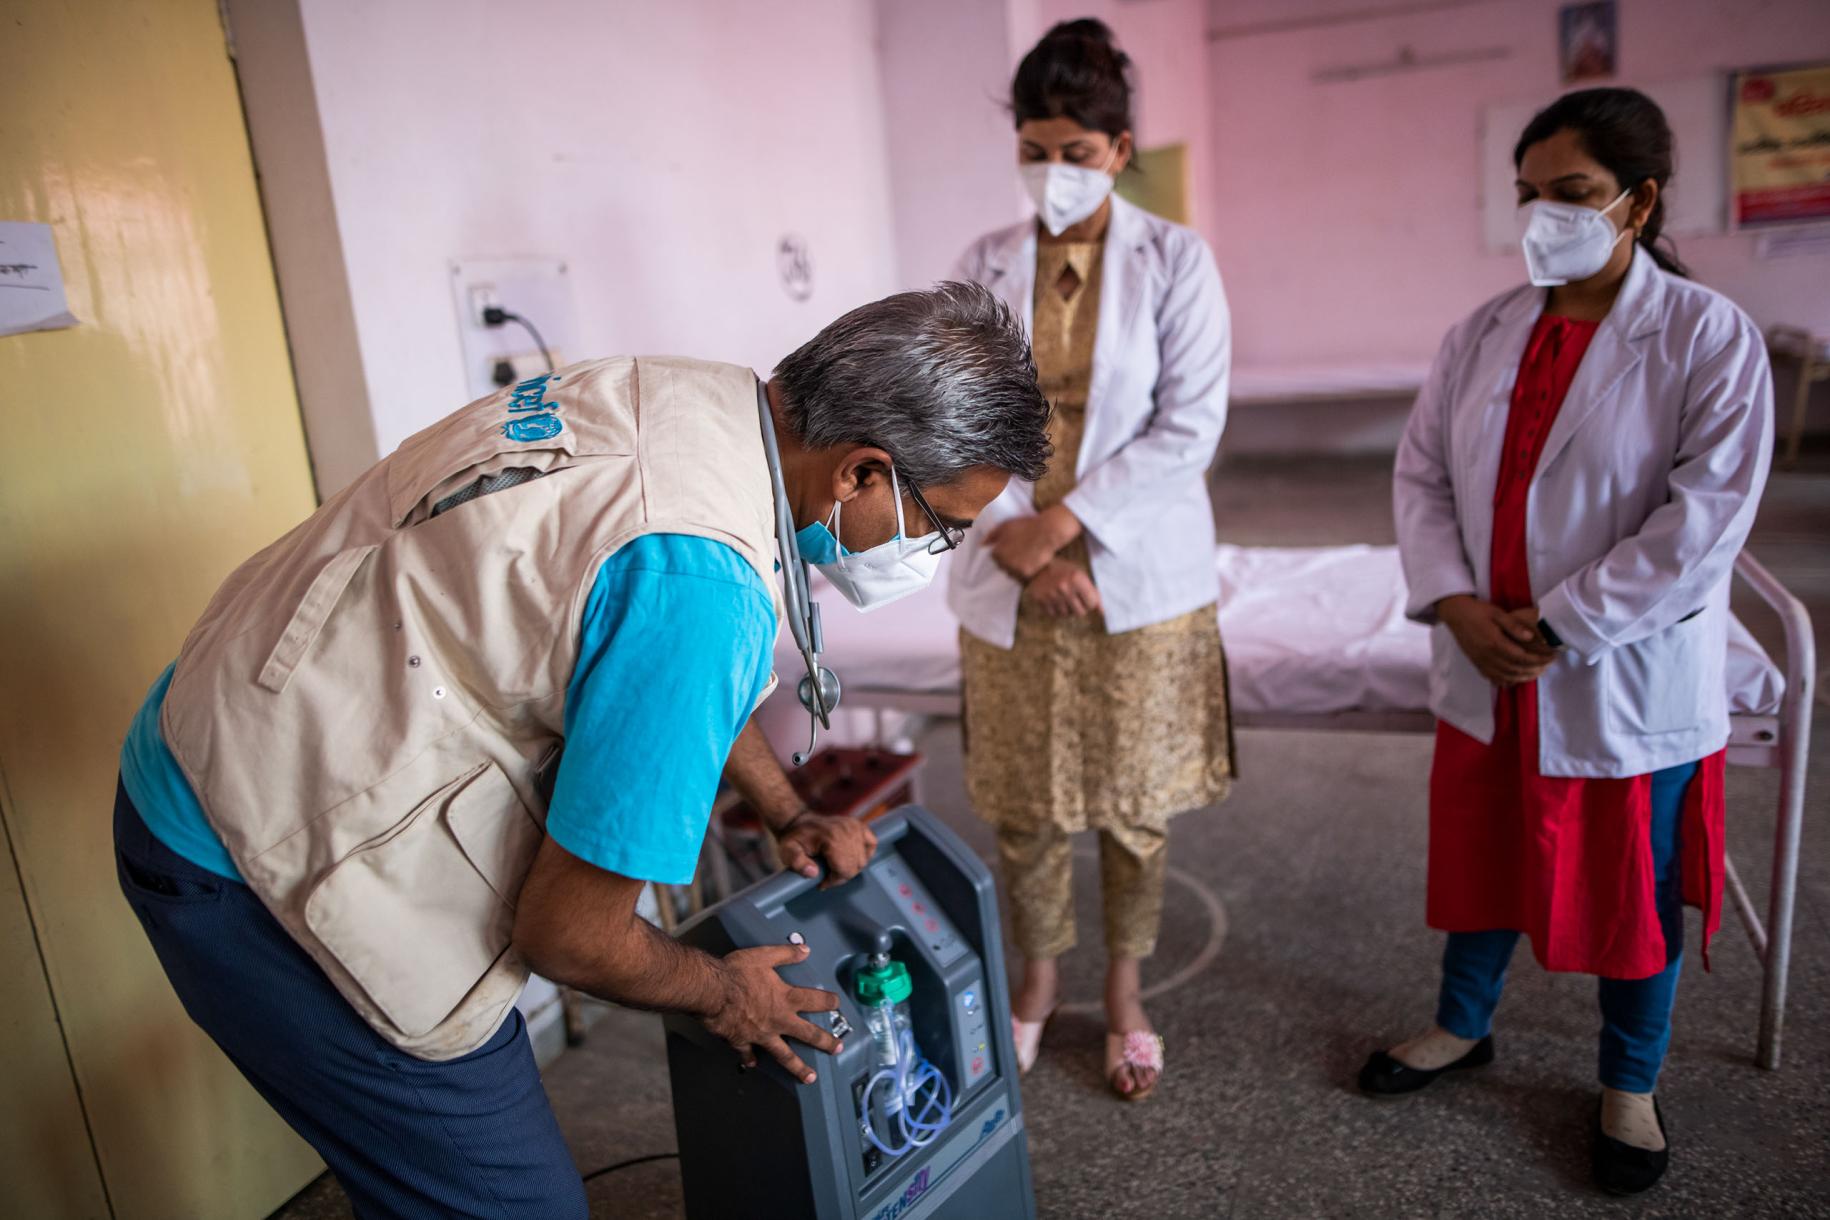 Un hombre, con un chaleco de UNICEF, con un concentrador de oxígeno muestra a dos profesionales médicos cómo funciona.